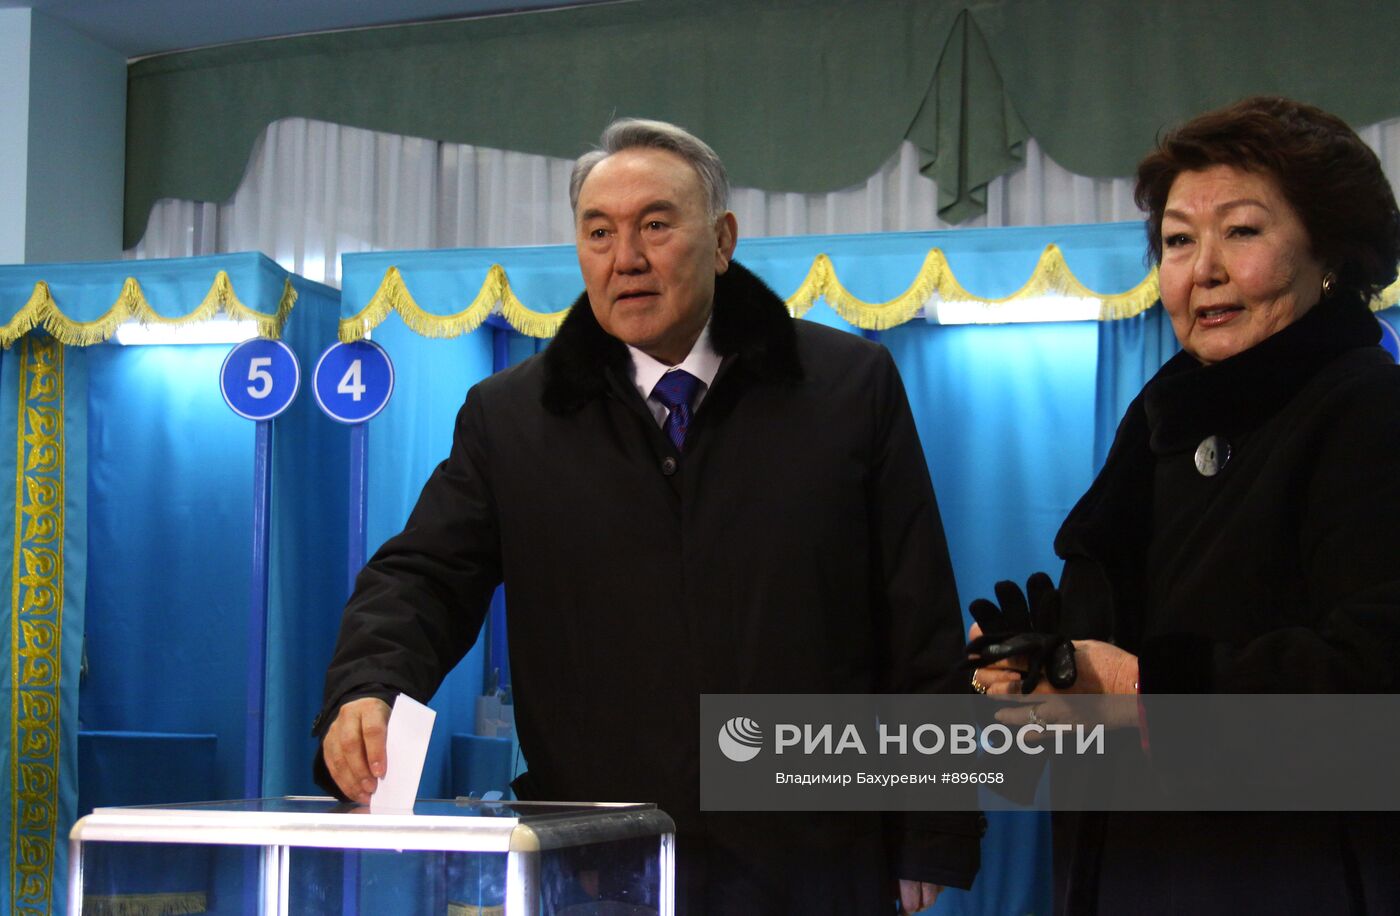 Выборы президента Республики Казахстан